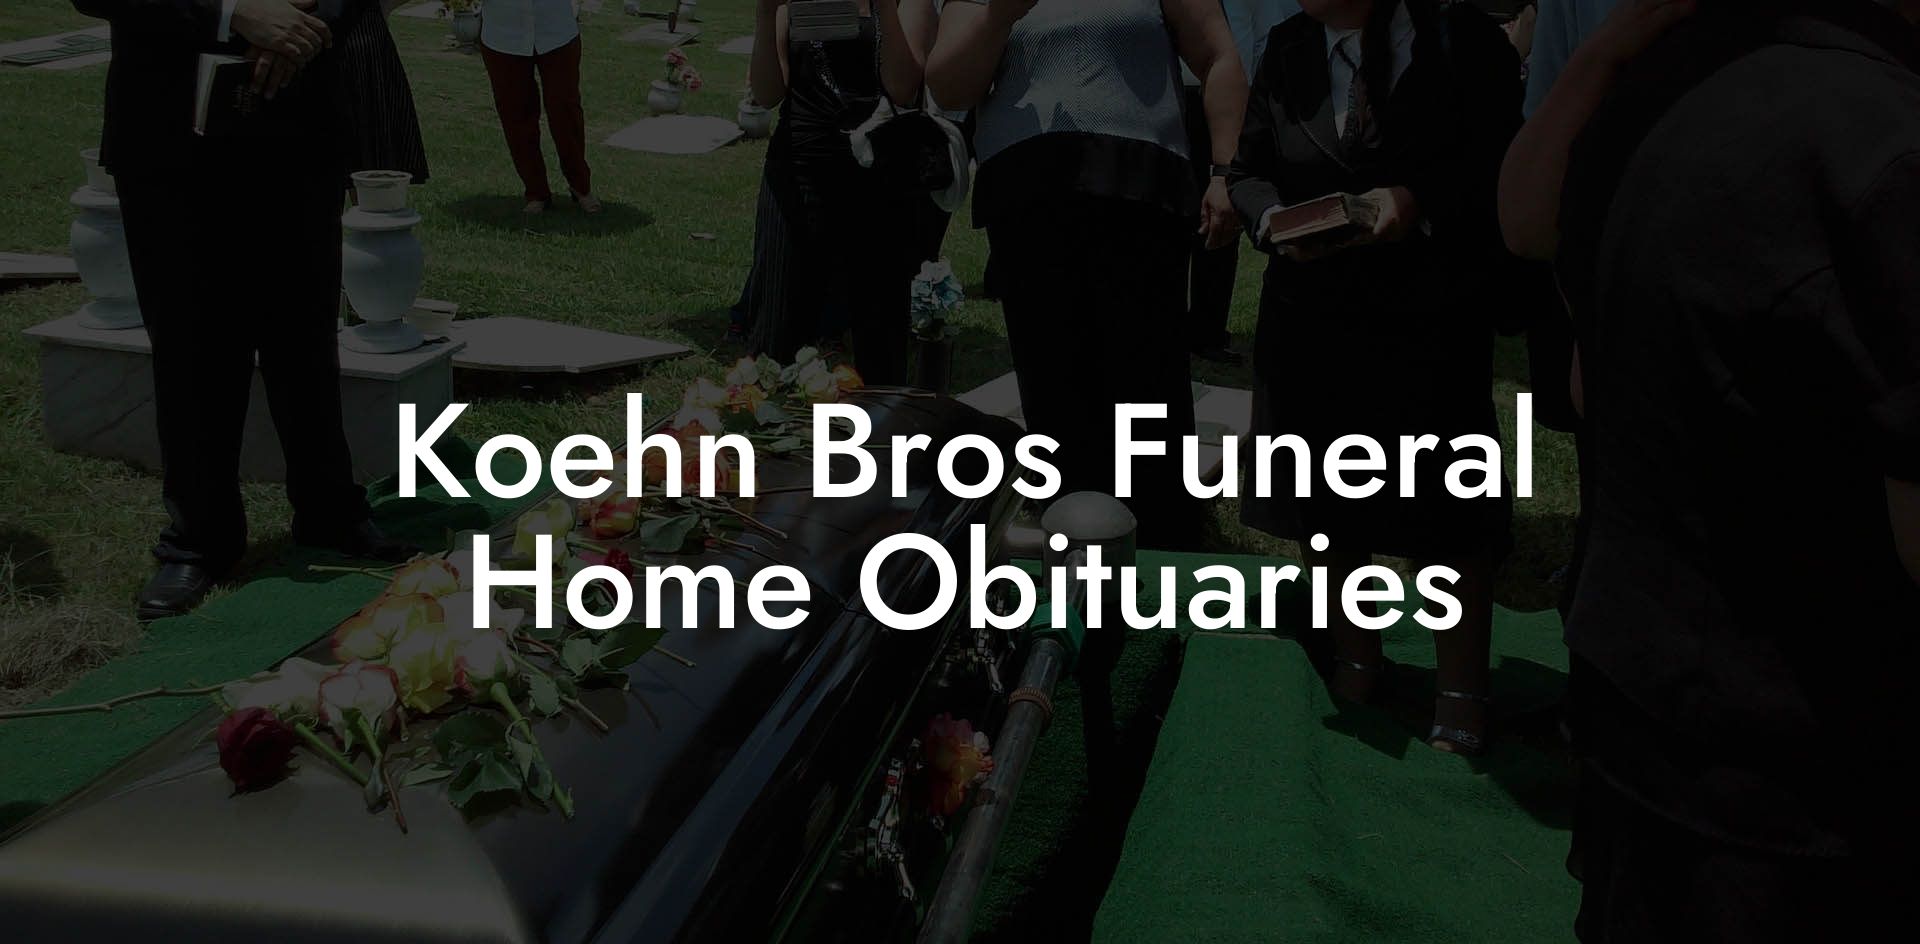 Koehn Bros Funeral Home Obituaries